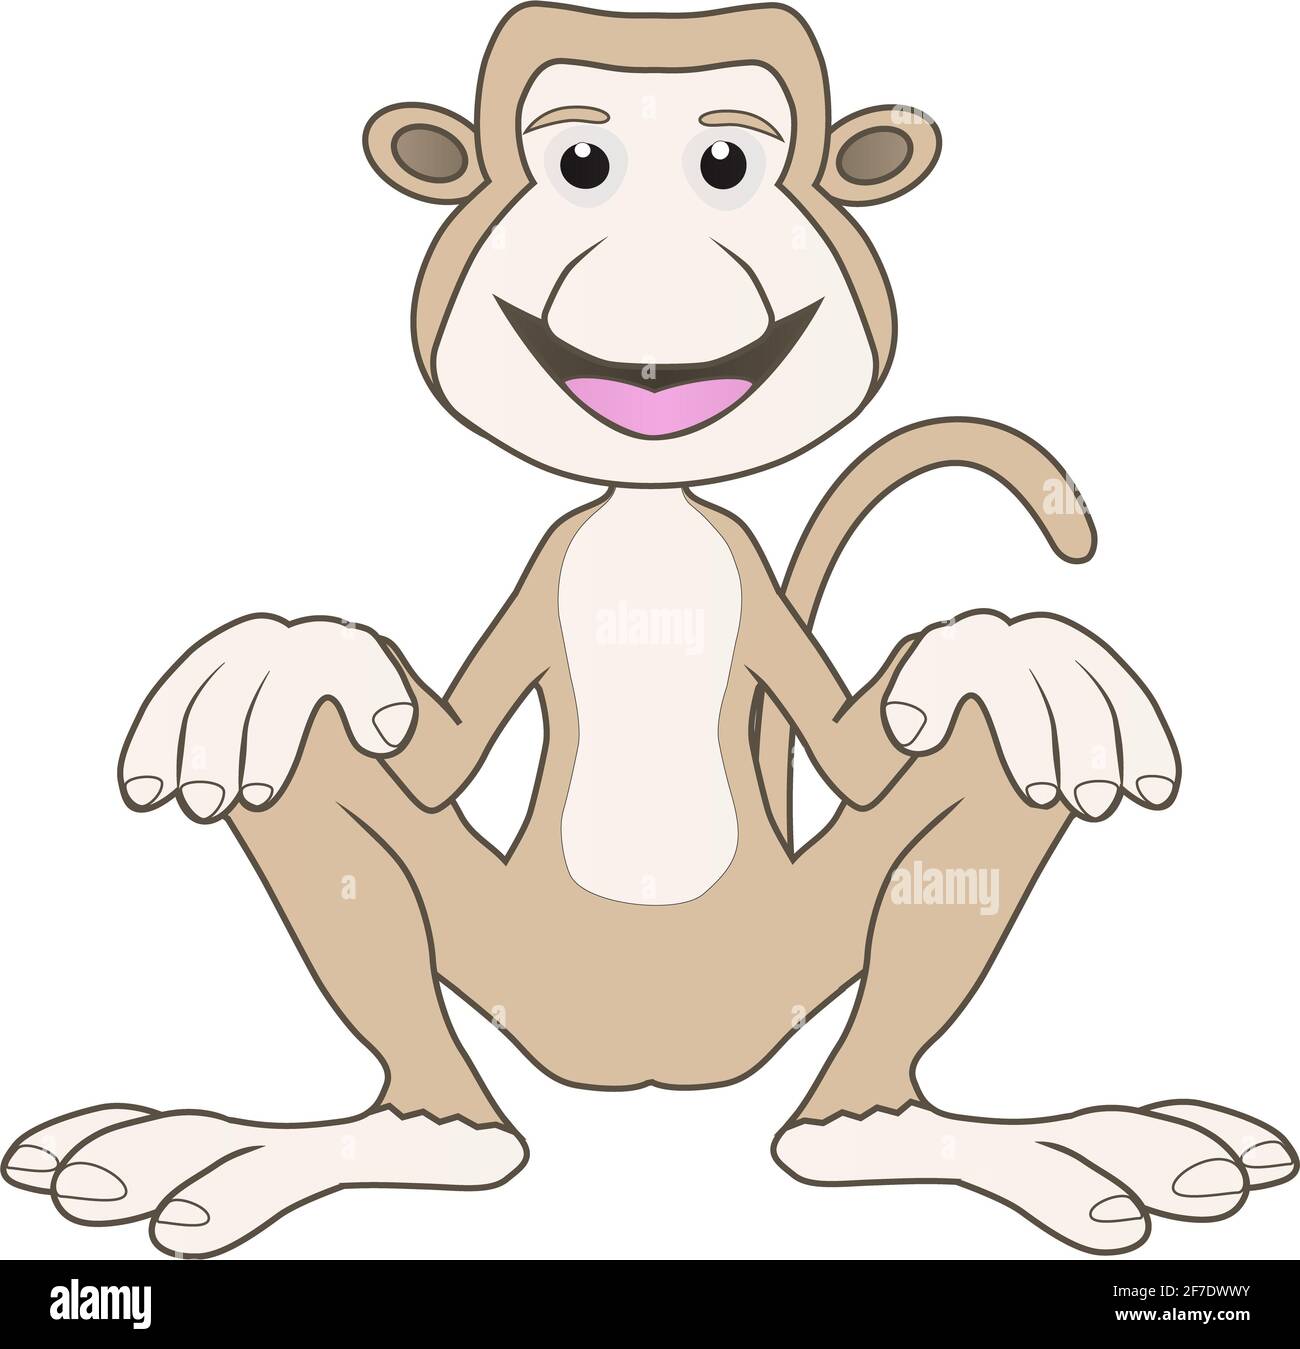 Dessin animé illustration d'un singe proboscis assis souriant amical Banque D'Images